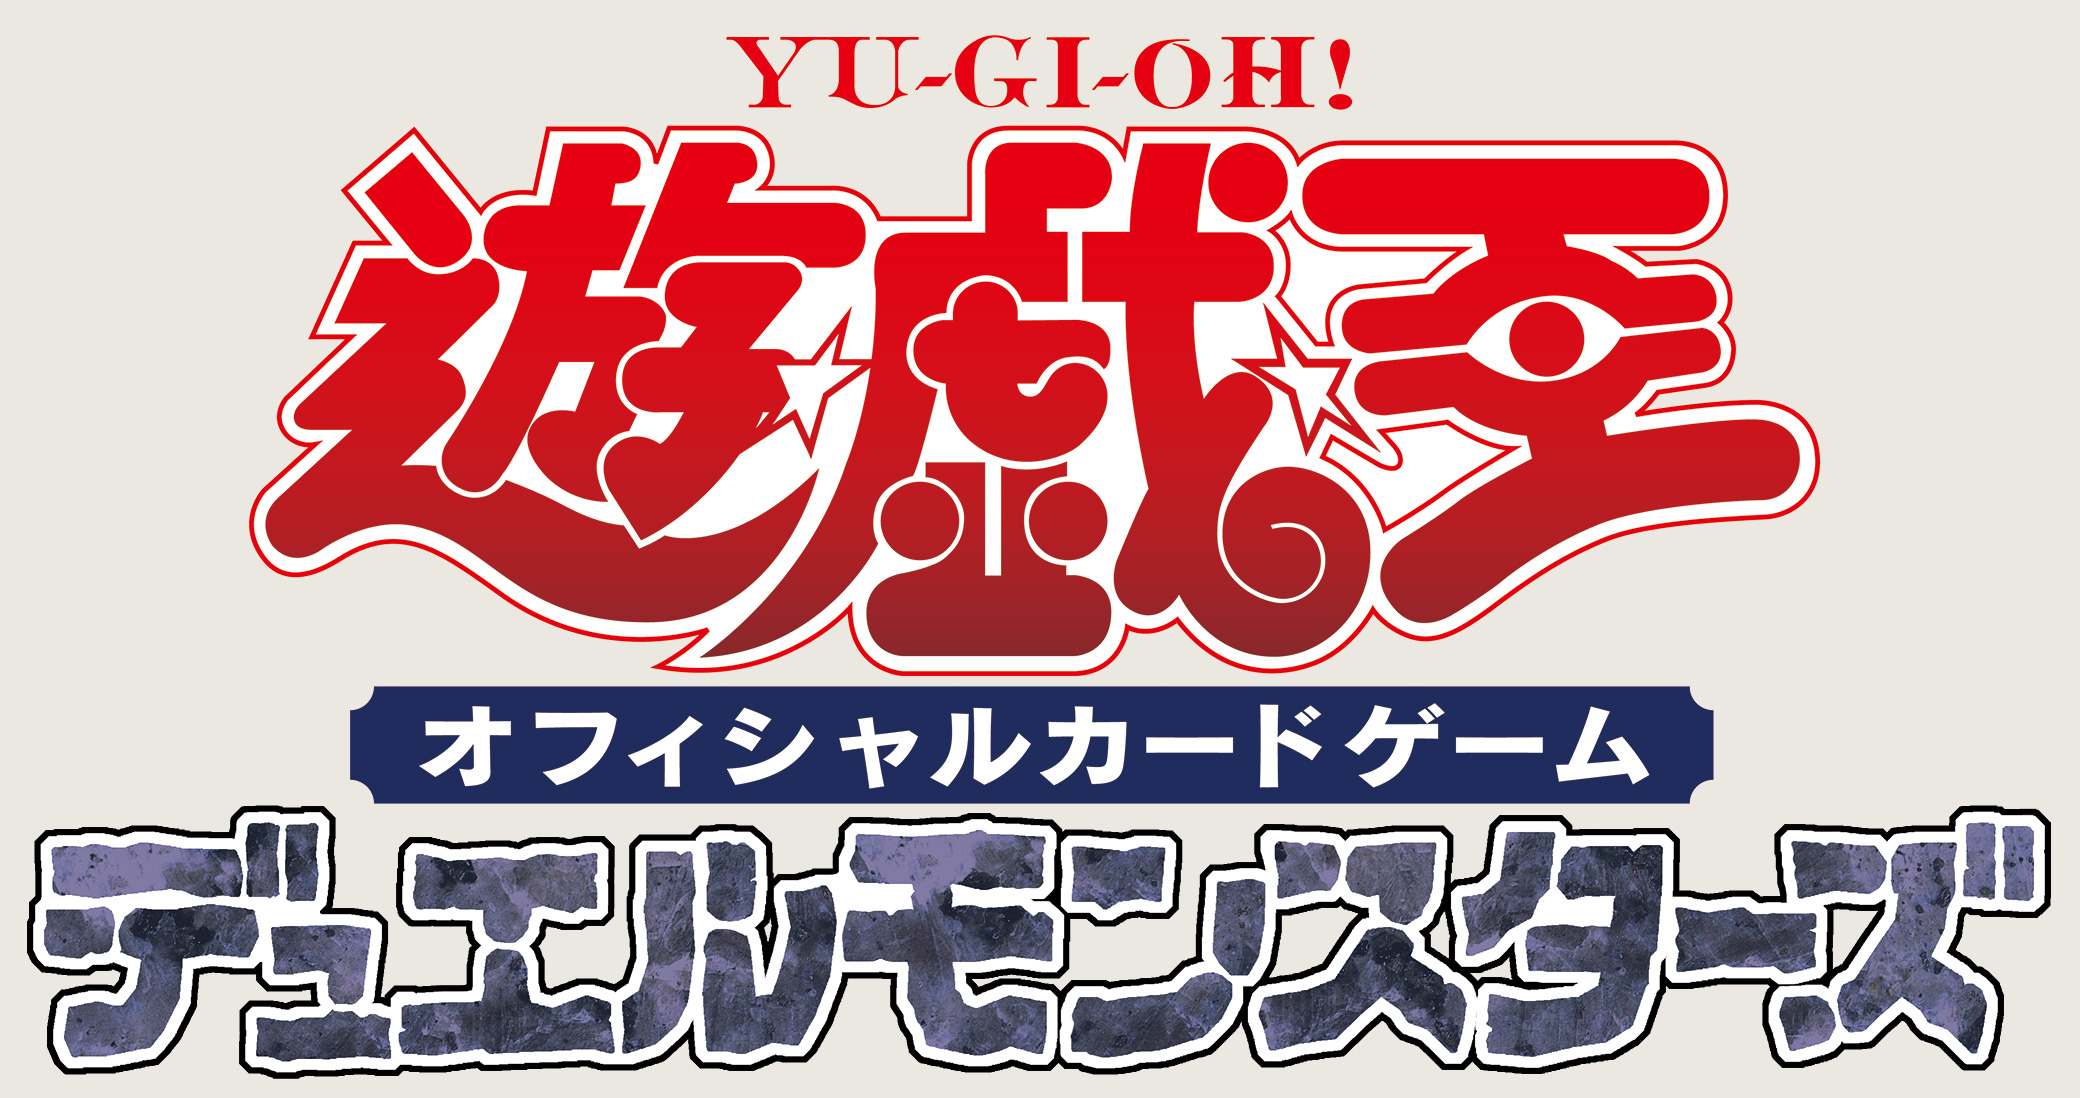 “Yu-Gi-Oh! Gioco di carte” Inizio del progetto per il 25° anniversario